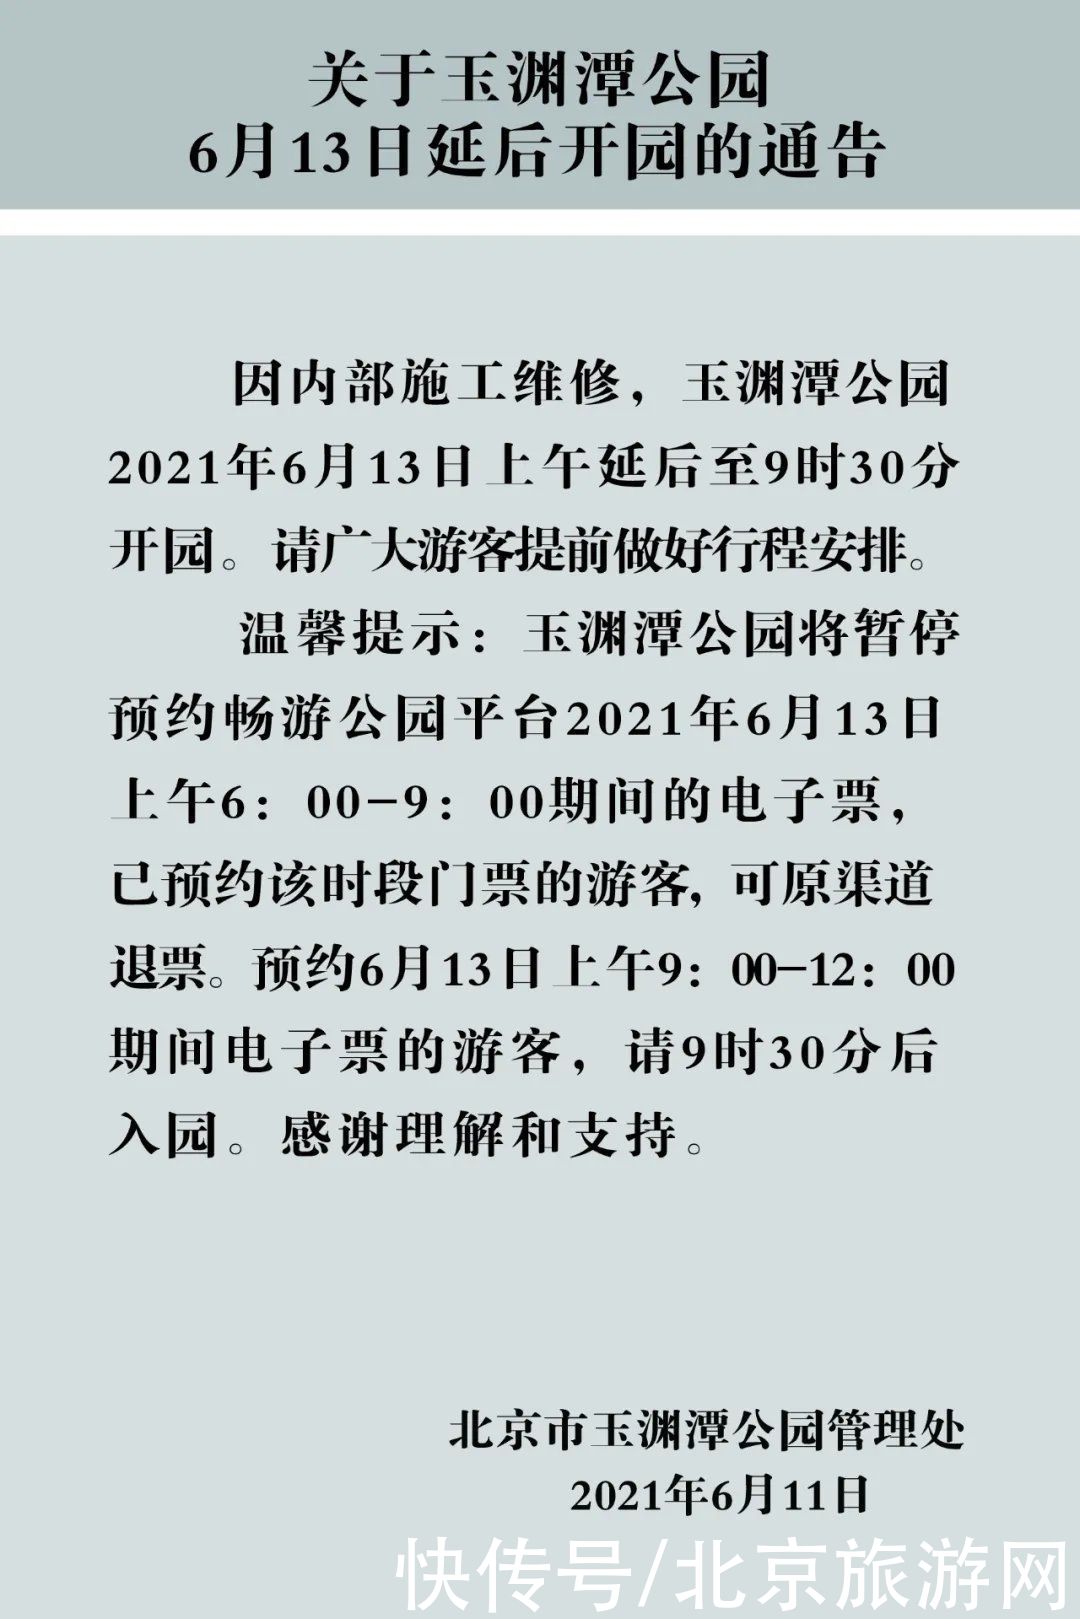 通告|关于玉渊潭公园6月13日延后开园的通告